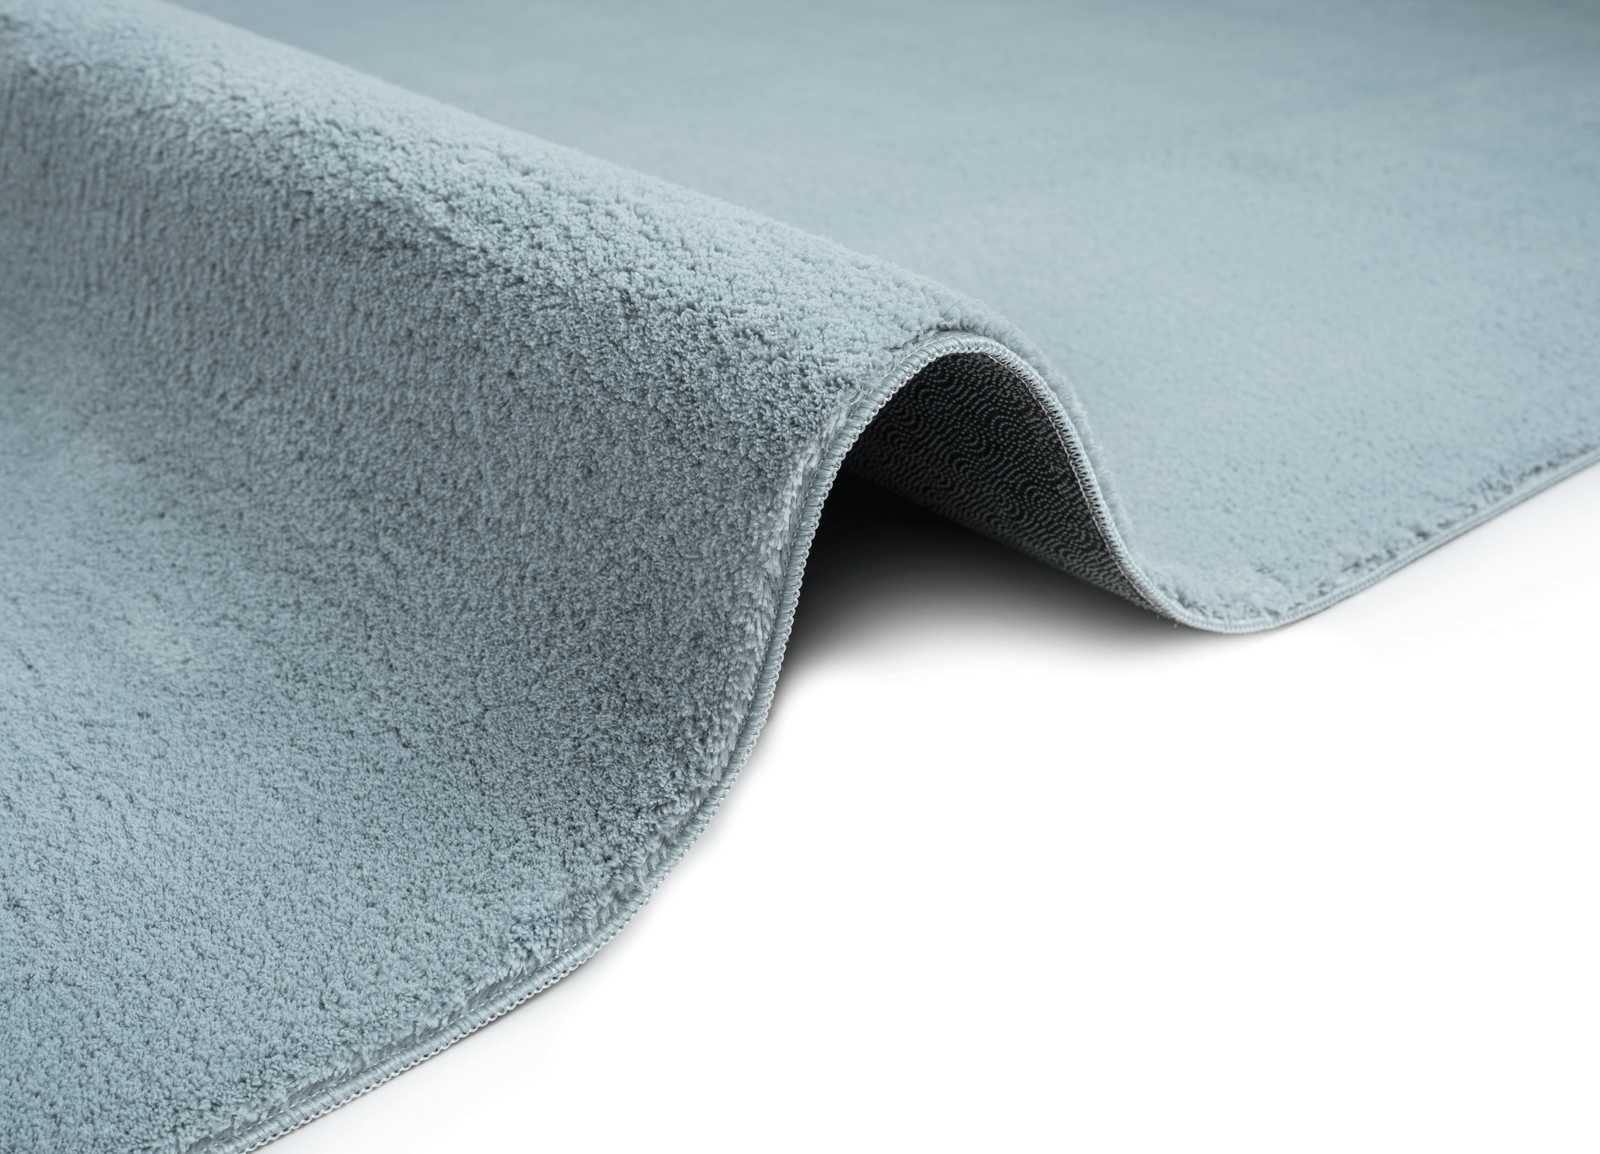             Flauschiger Hochflor Teppich in Blau – 110 x 60 cm
        